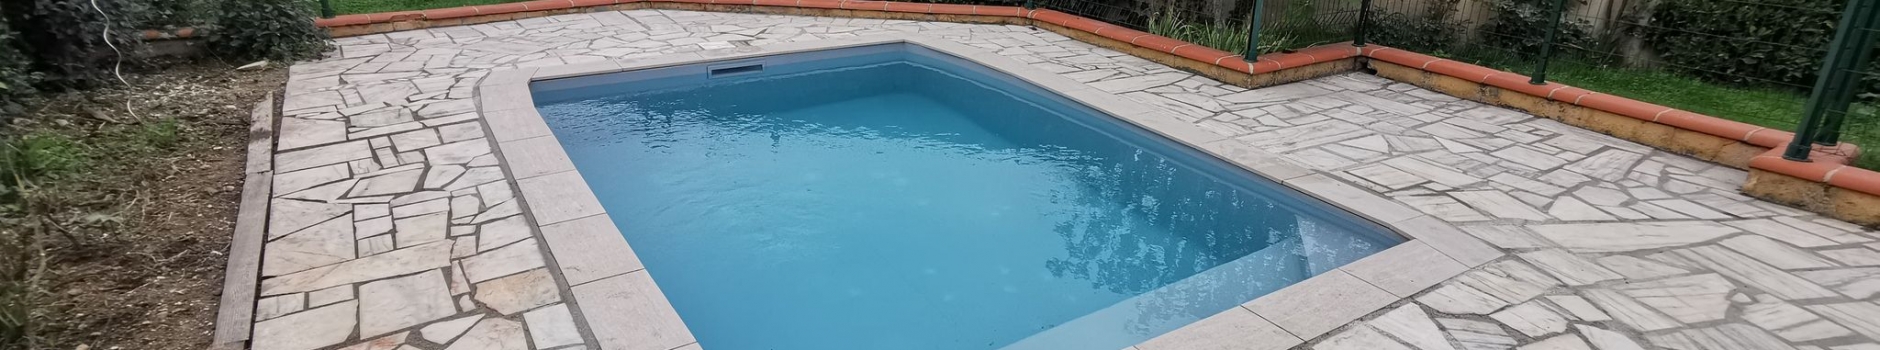 Rénovation d’une piscine ovale sur mesure à Colomiers